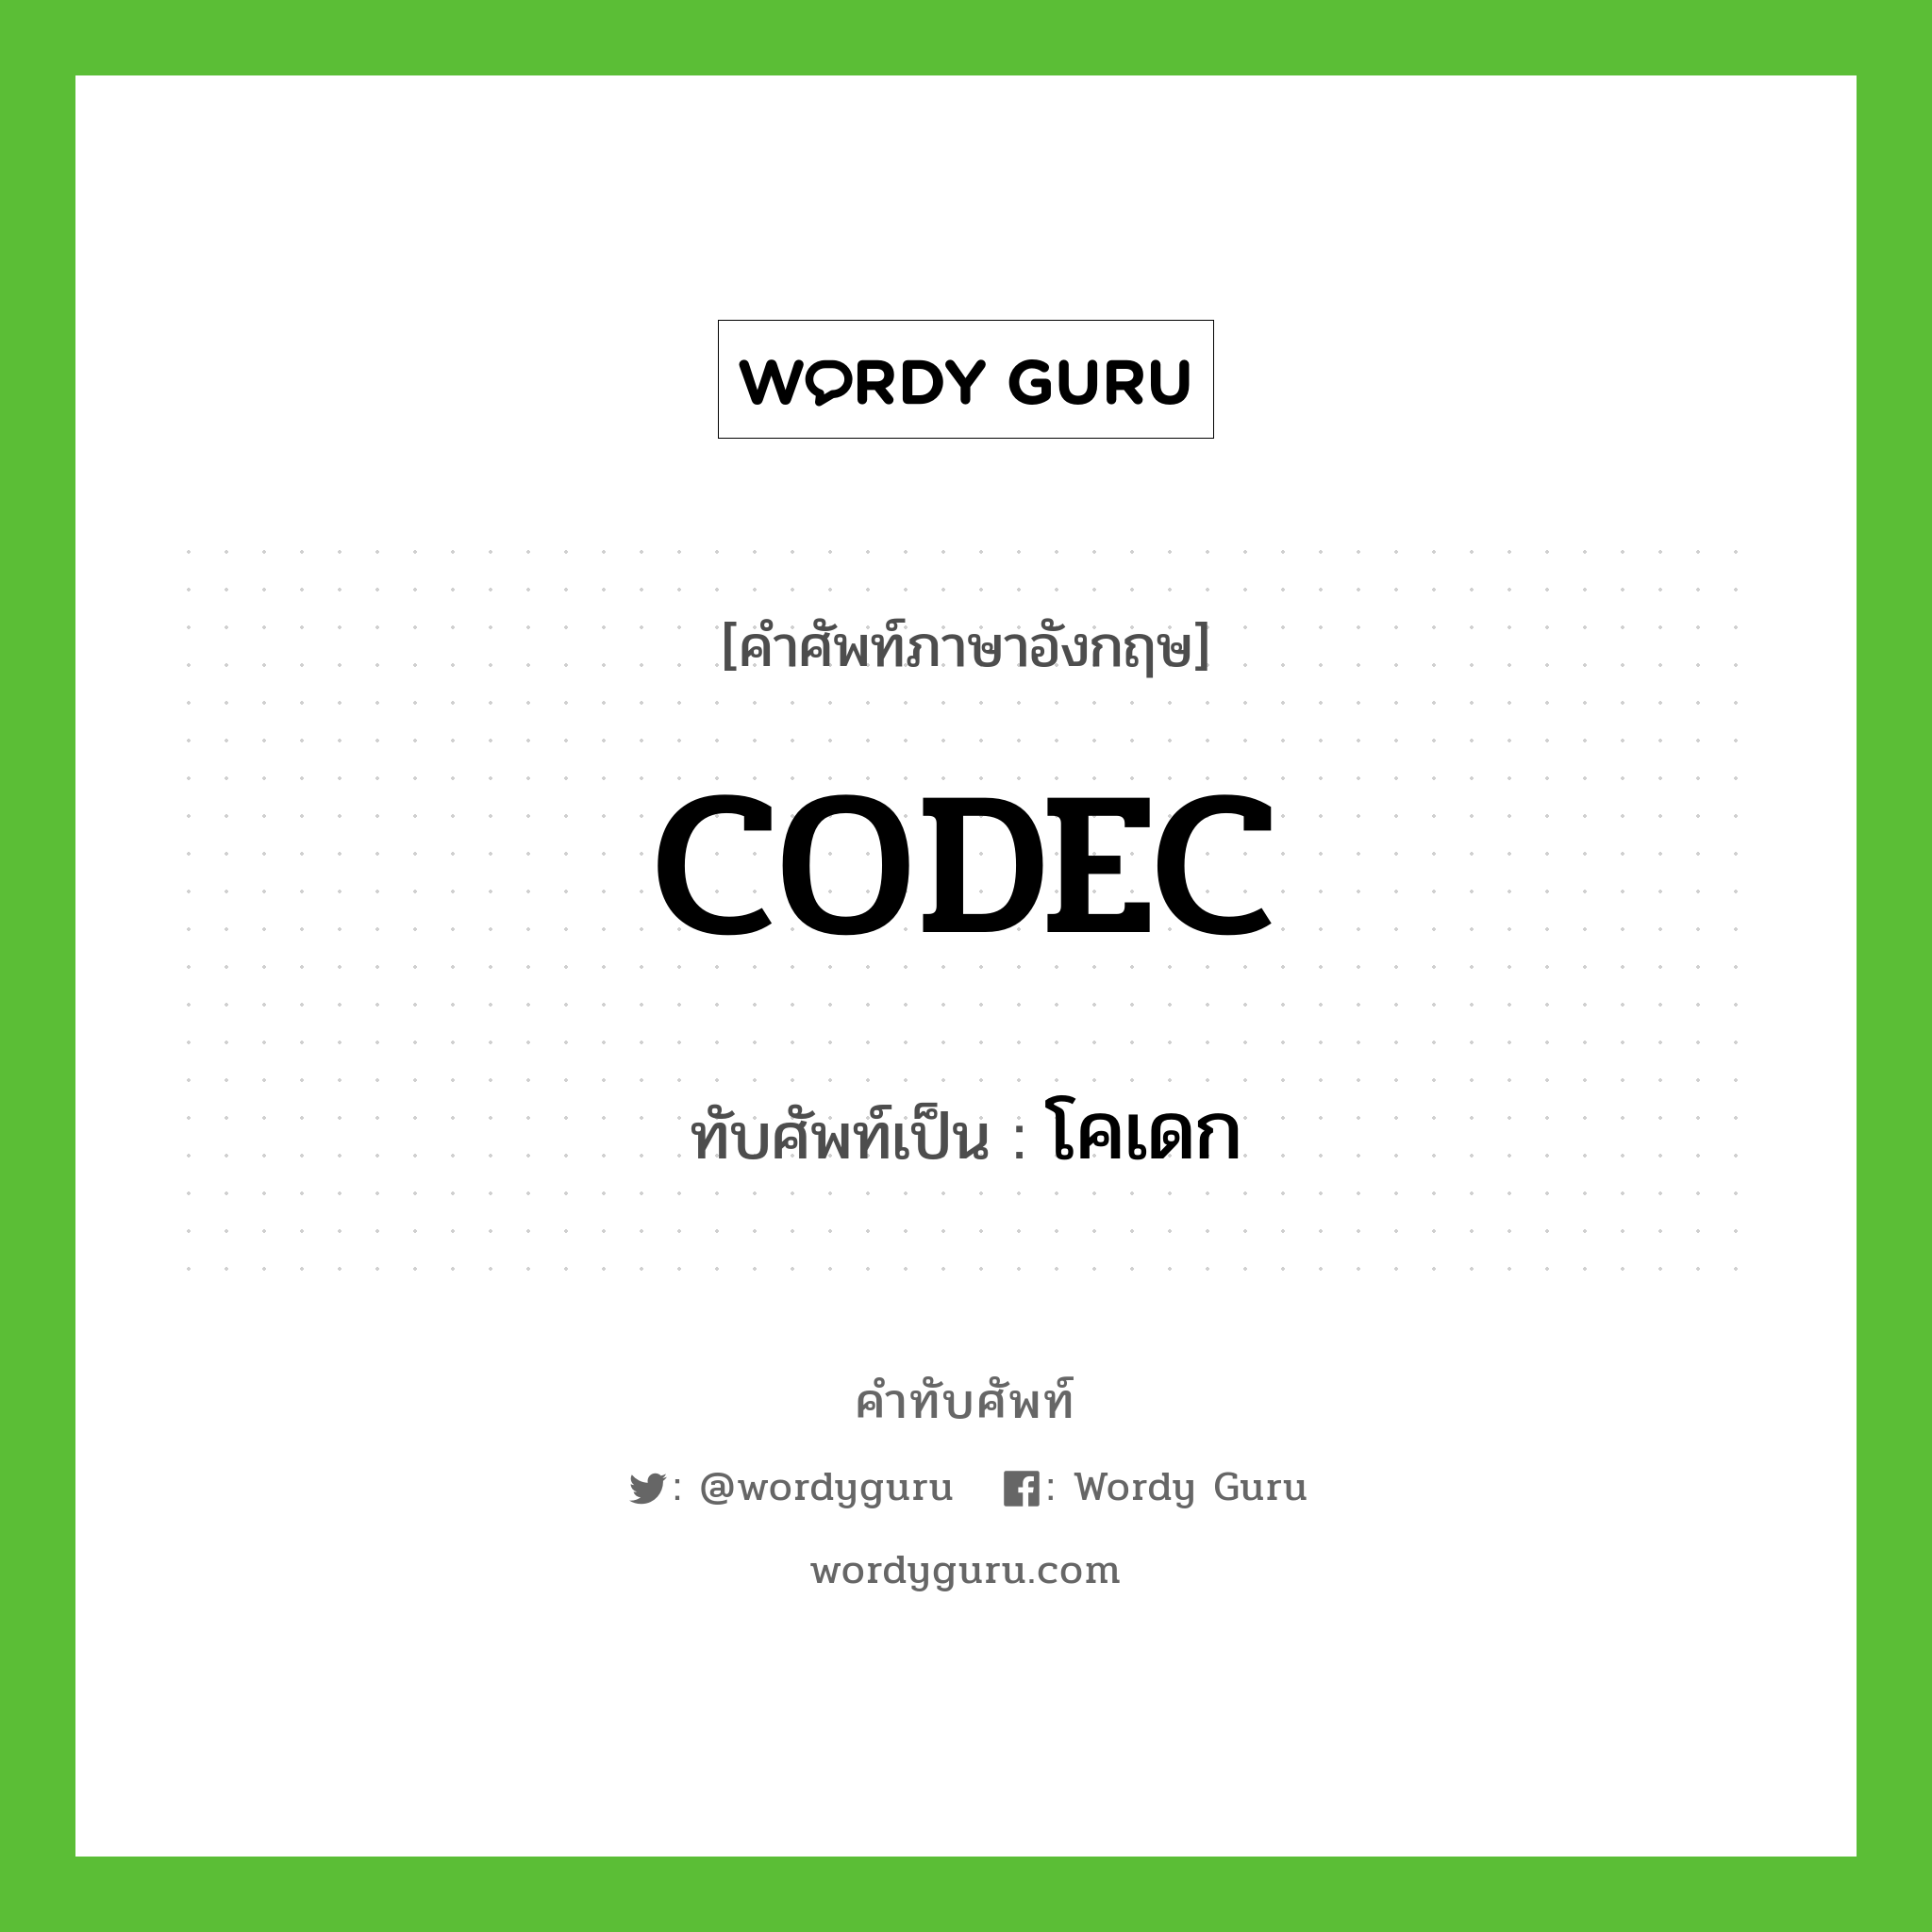 CODEC เขียนเป็นคำไทยว่าอะไร?, คำศัพท์ภาษาอังกฤษ CODEC ทับศัพท์เป็น โคเดก